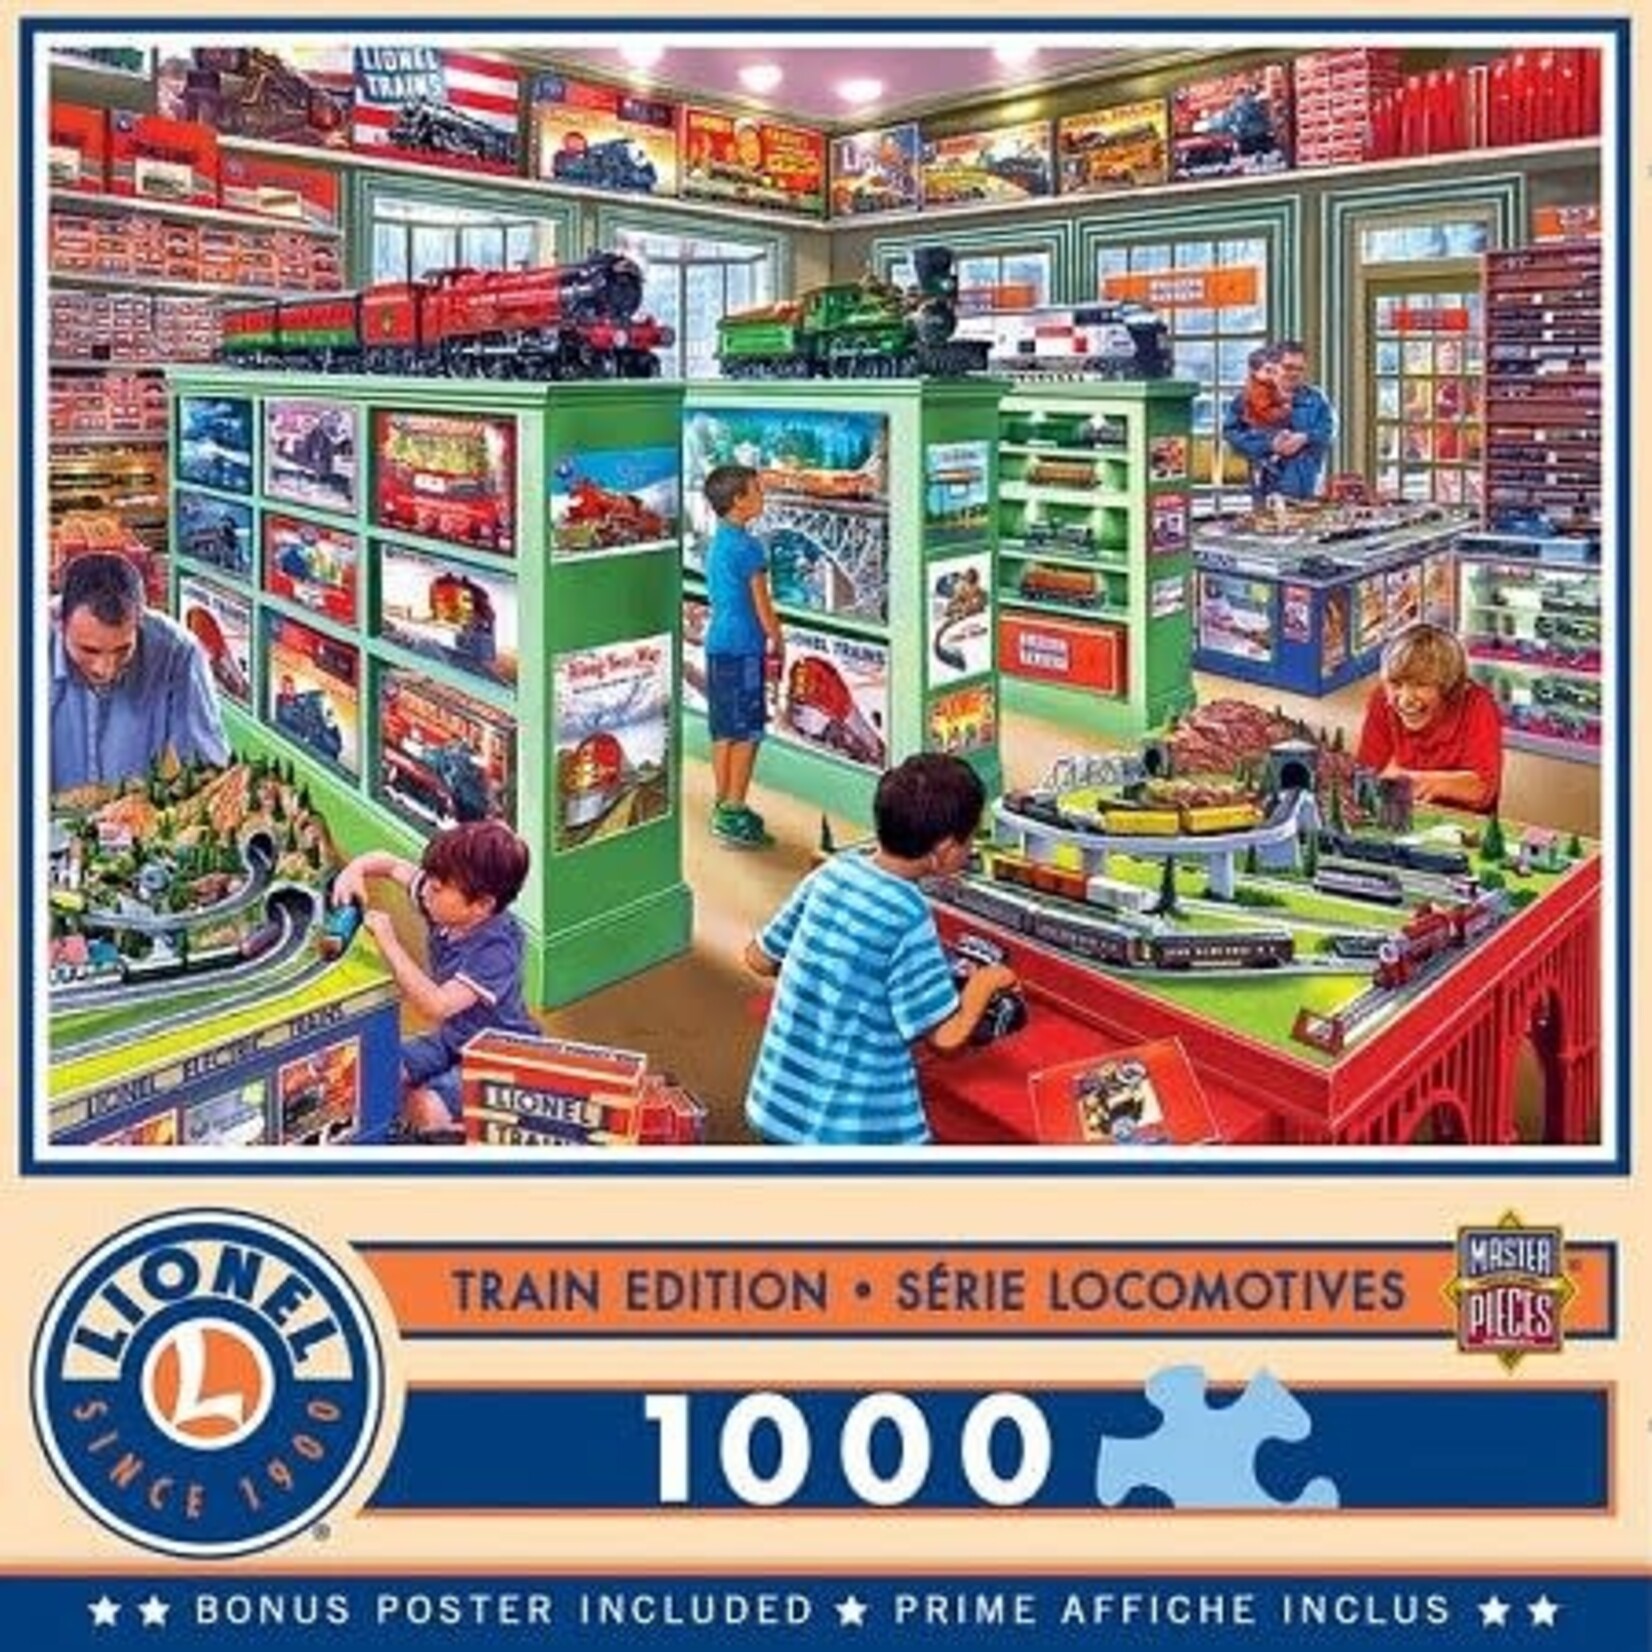 Master Pieces Lionel: The Lionel Store Trains Puzzle (1000pc)